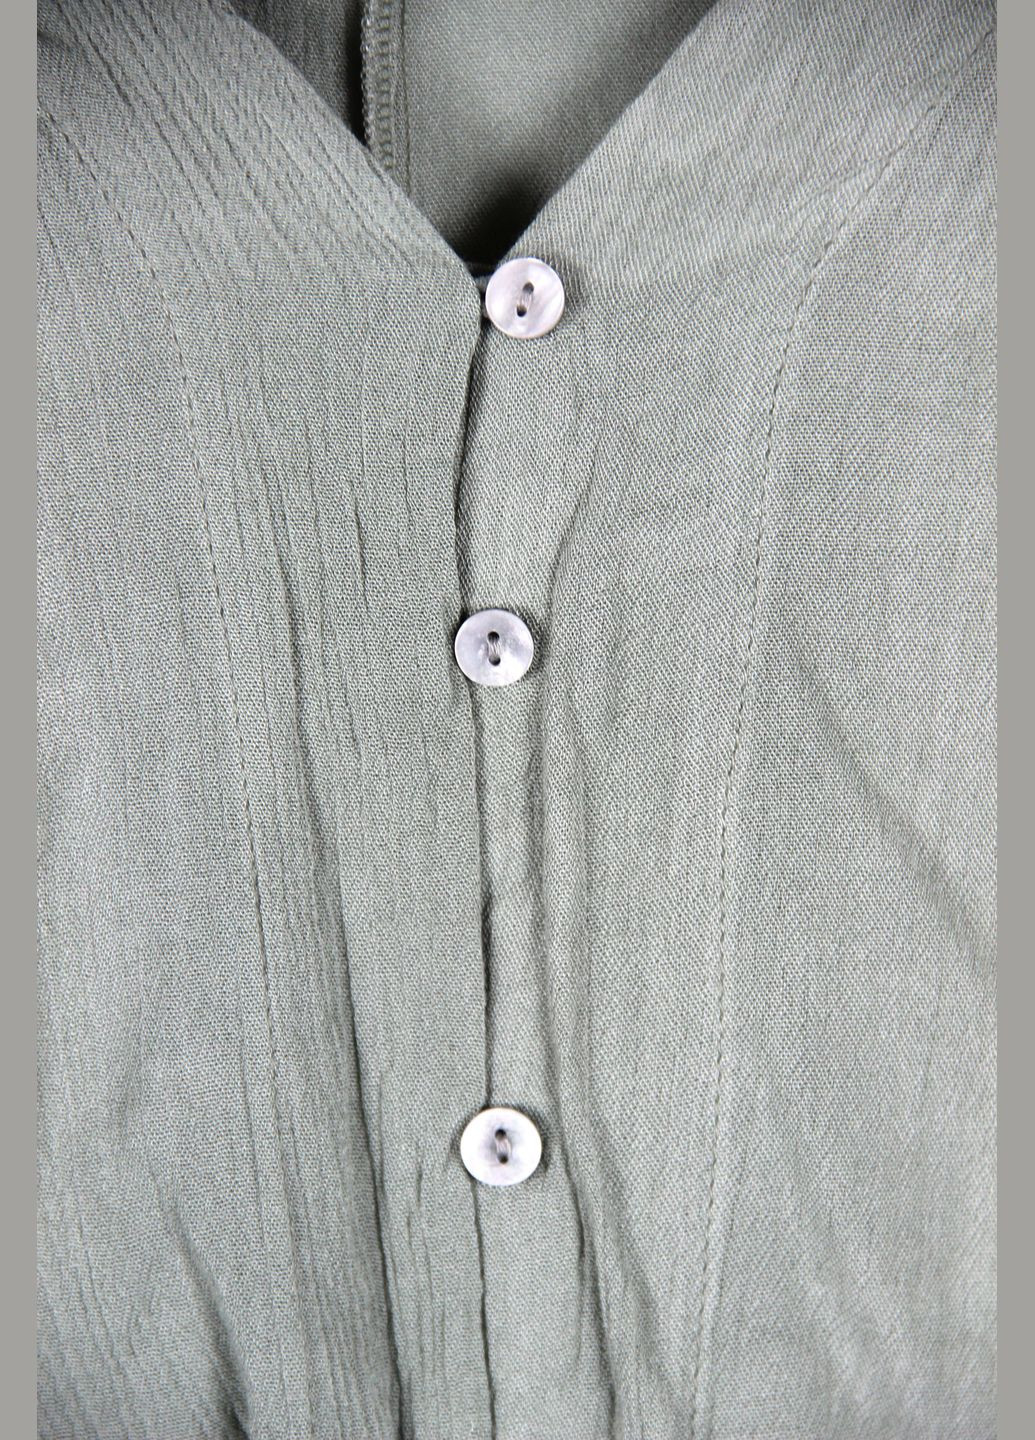 Оливковковая (хаки) рубашка Primark